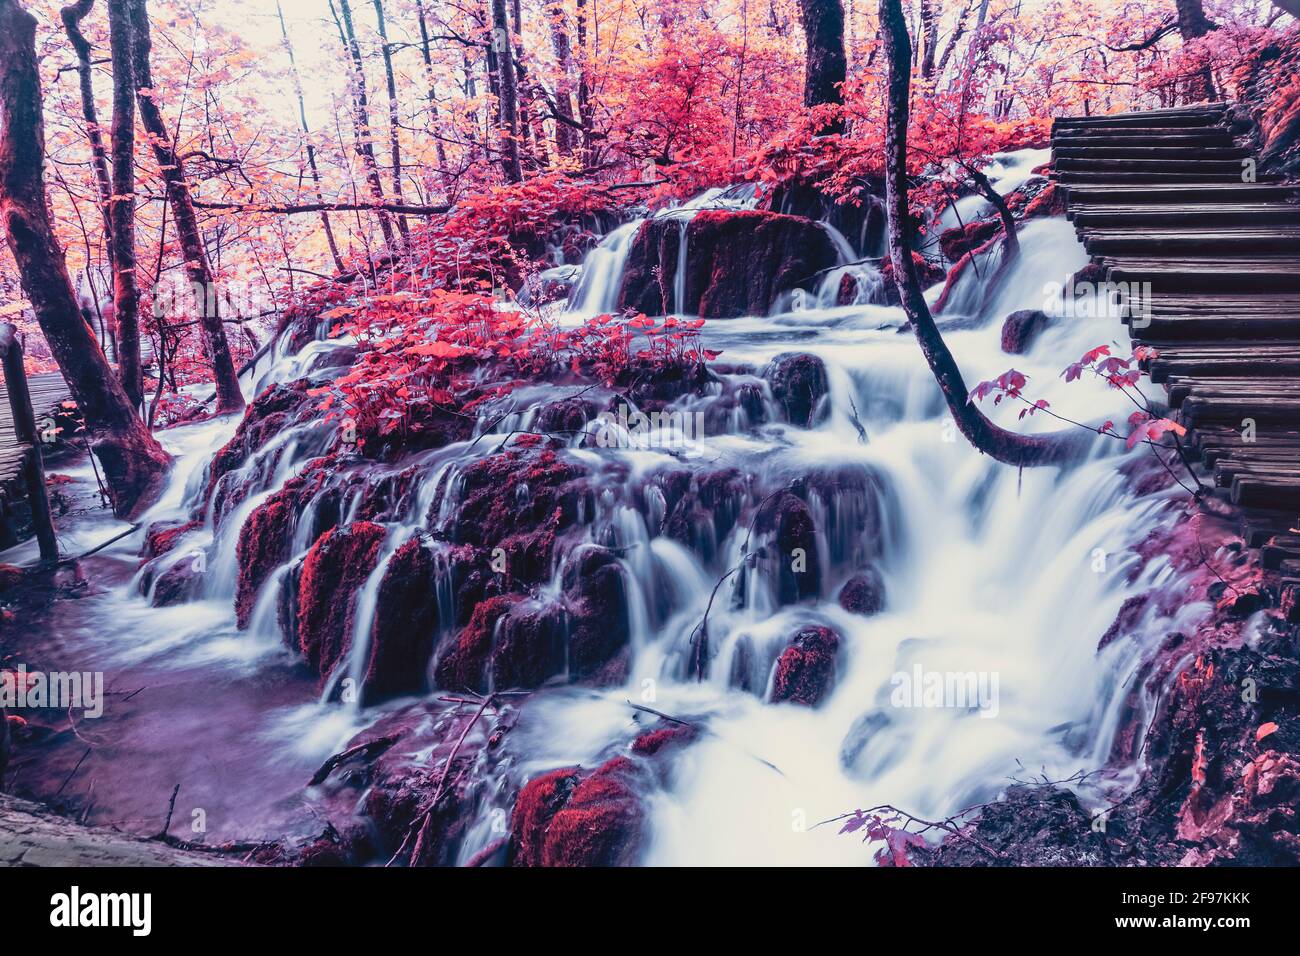 Molta acqua, foglie rosse e natura mozzafiato nel Parco Nazionale dei Laghi di Plitvice in Croazia. L'immagine è a colori manipolati. Foto Stock